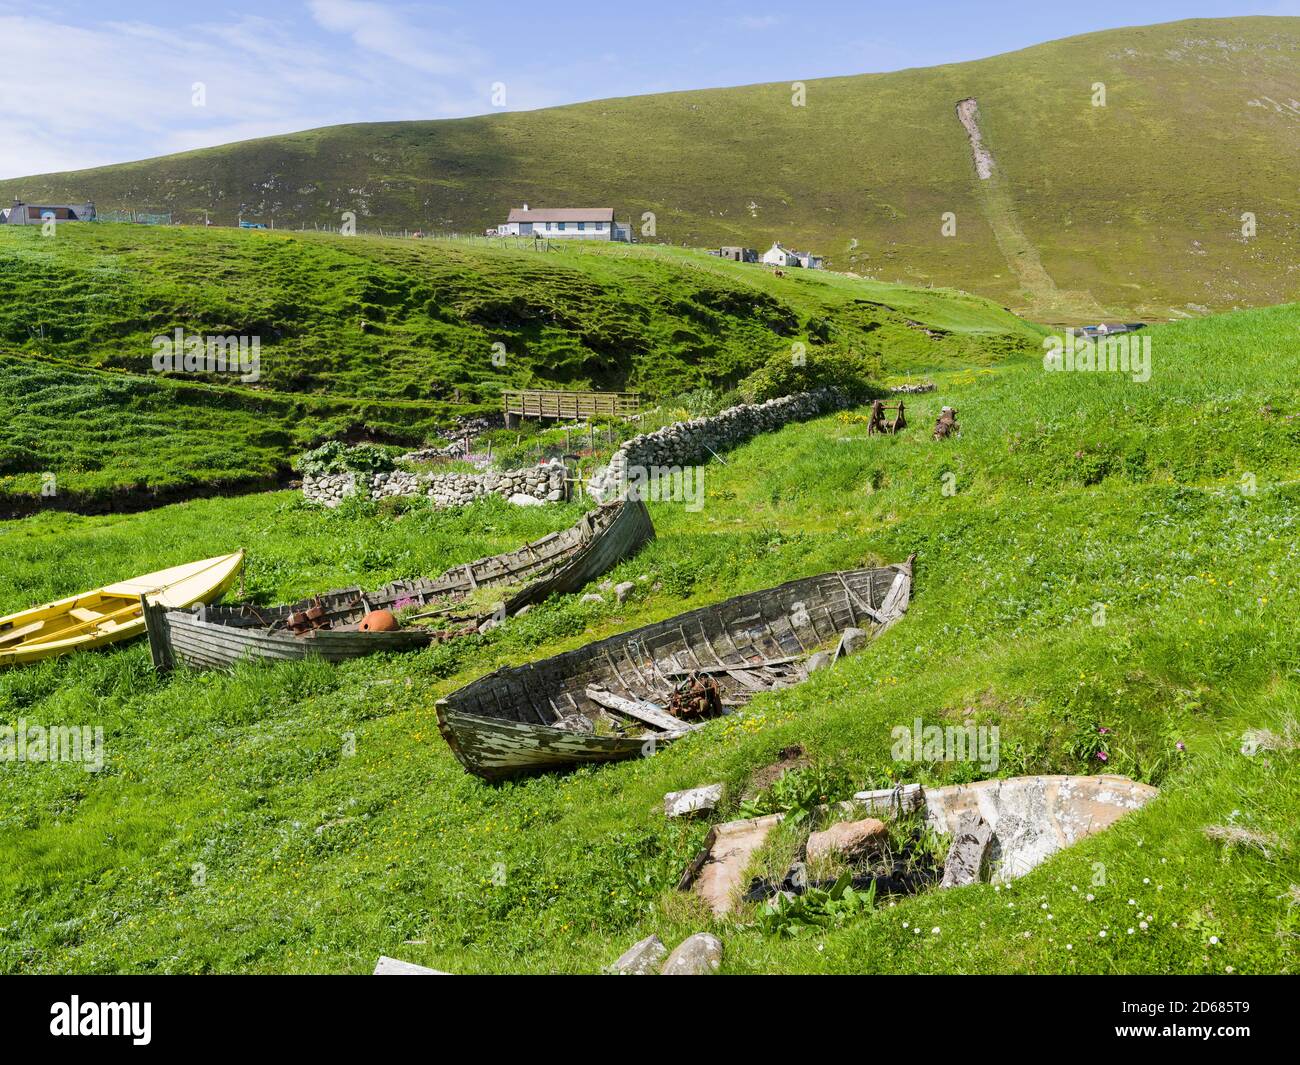 Siedlung in der Nähe von Ham Voe und alte Reihe Baots im Hafen, Foula Island, Shetland Inseln Archipelagos, Schottland, Vereinigtes Königreich, Europa Stockfoto